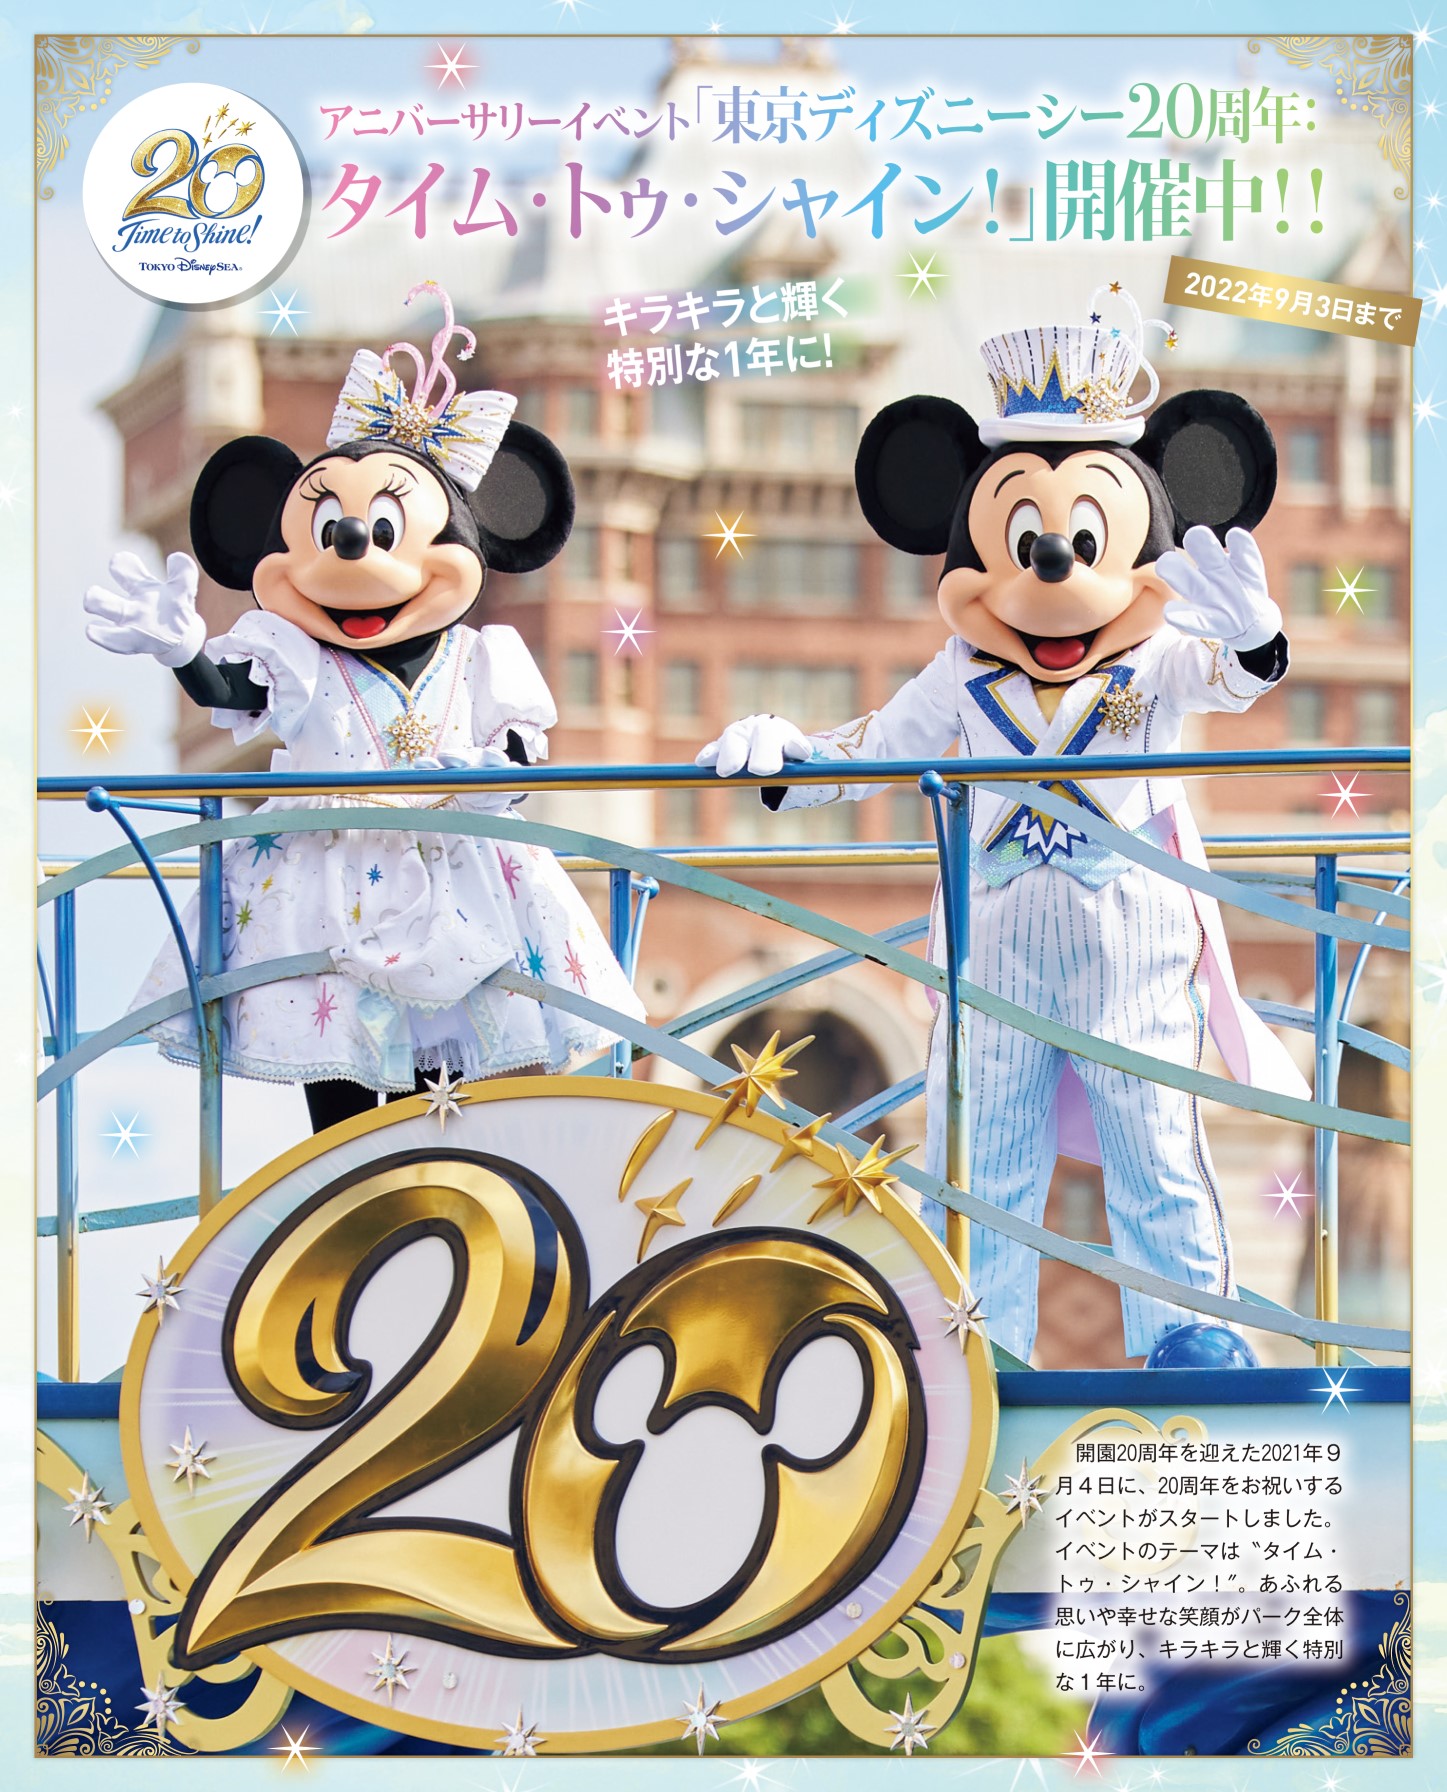 「東京ディズニーシー 20周年クロニクル」表紙 ミッキー ミニー